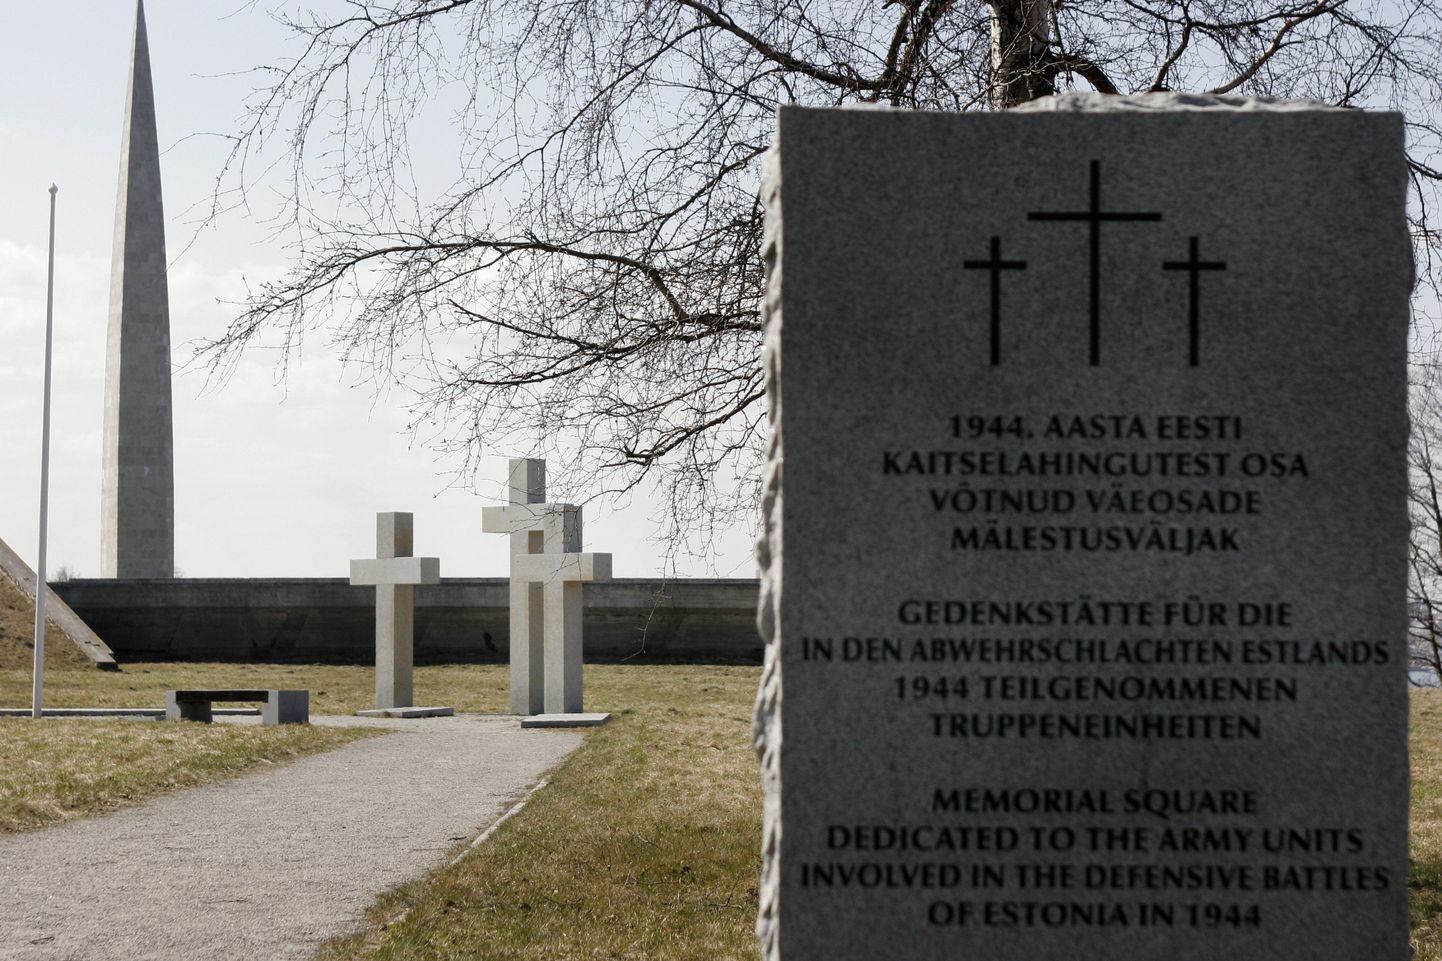 Tallinnas Maarjamäel asuv Eesti kaitselahingutest osa võtnud väeosade mälestusväljak. Taamal Maarjamäe obelisk.